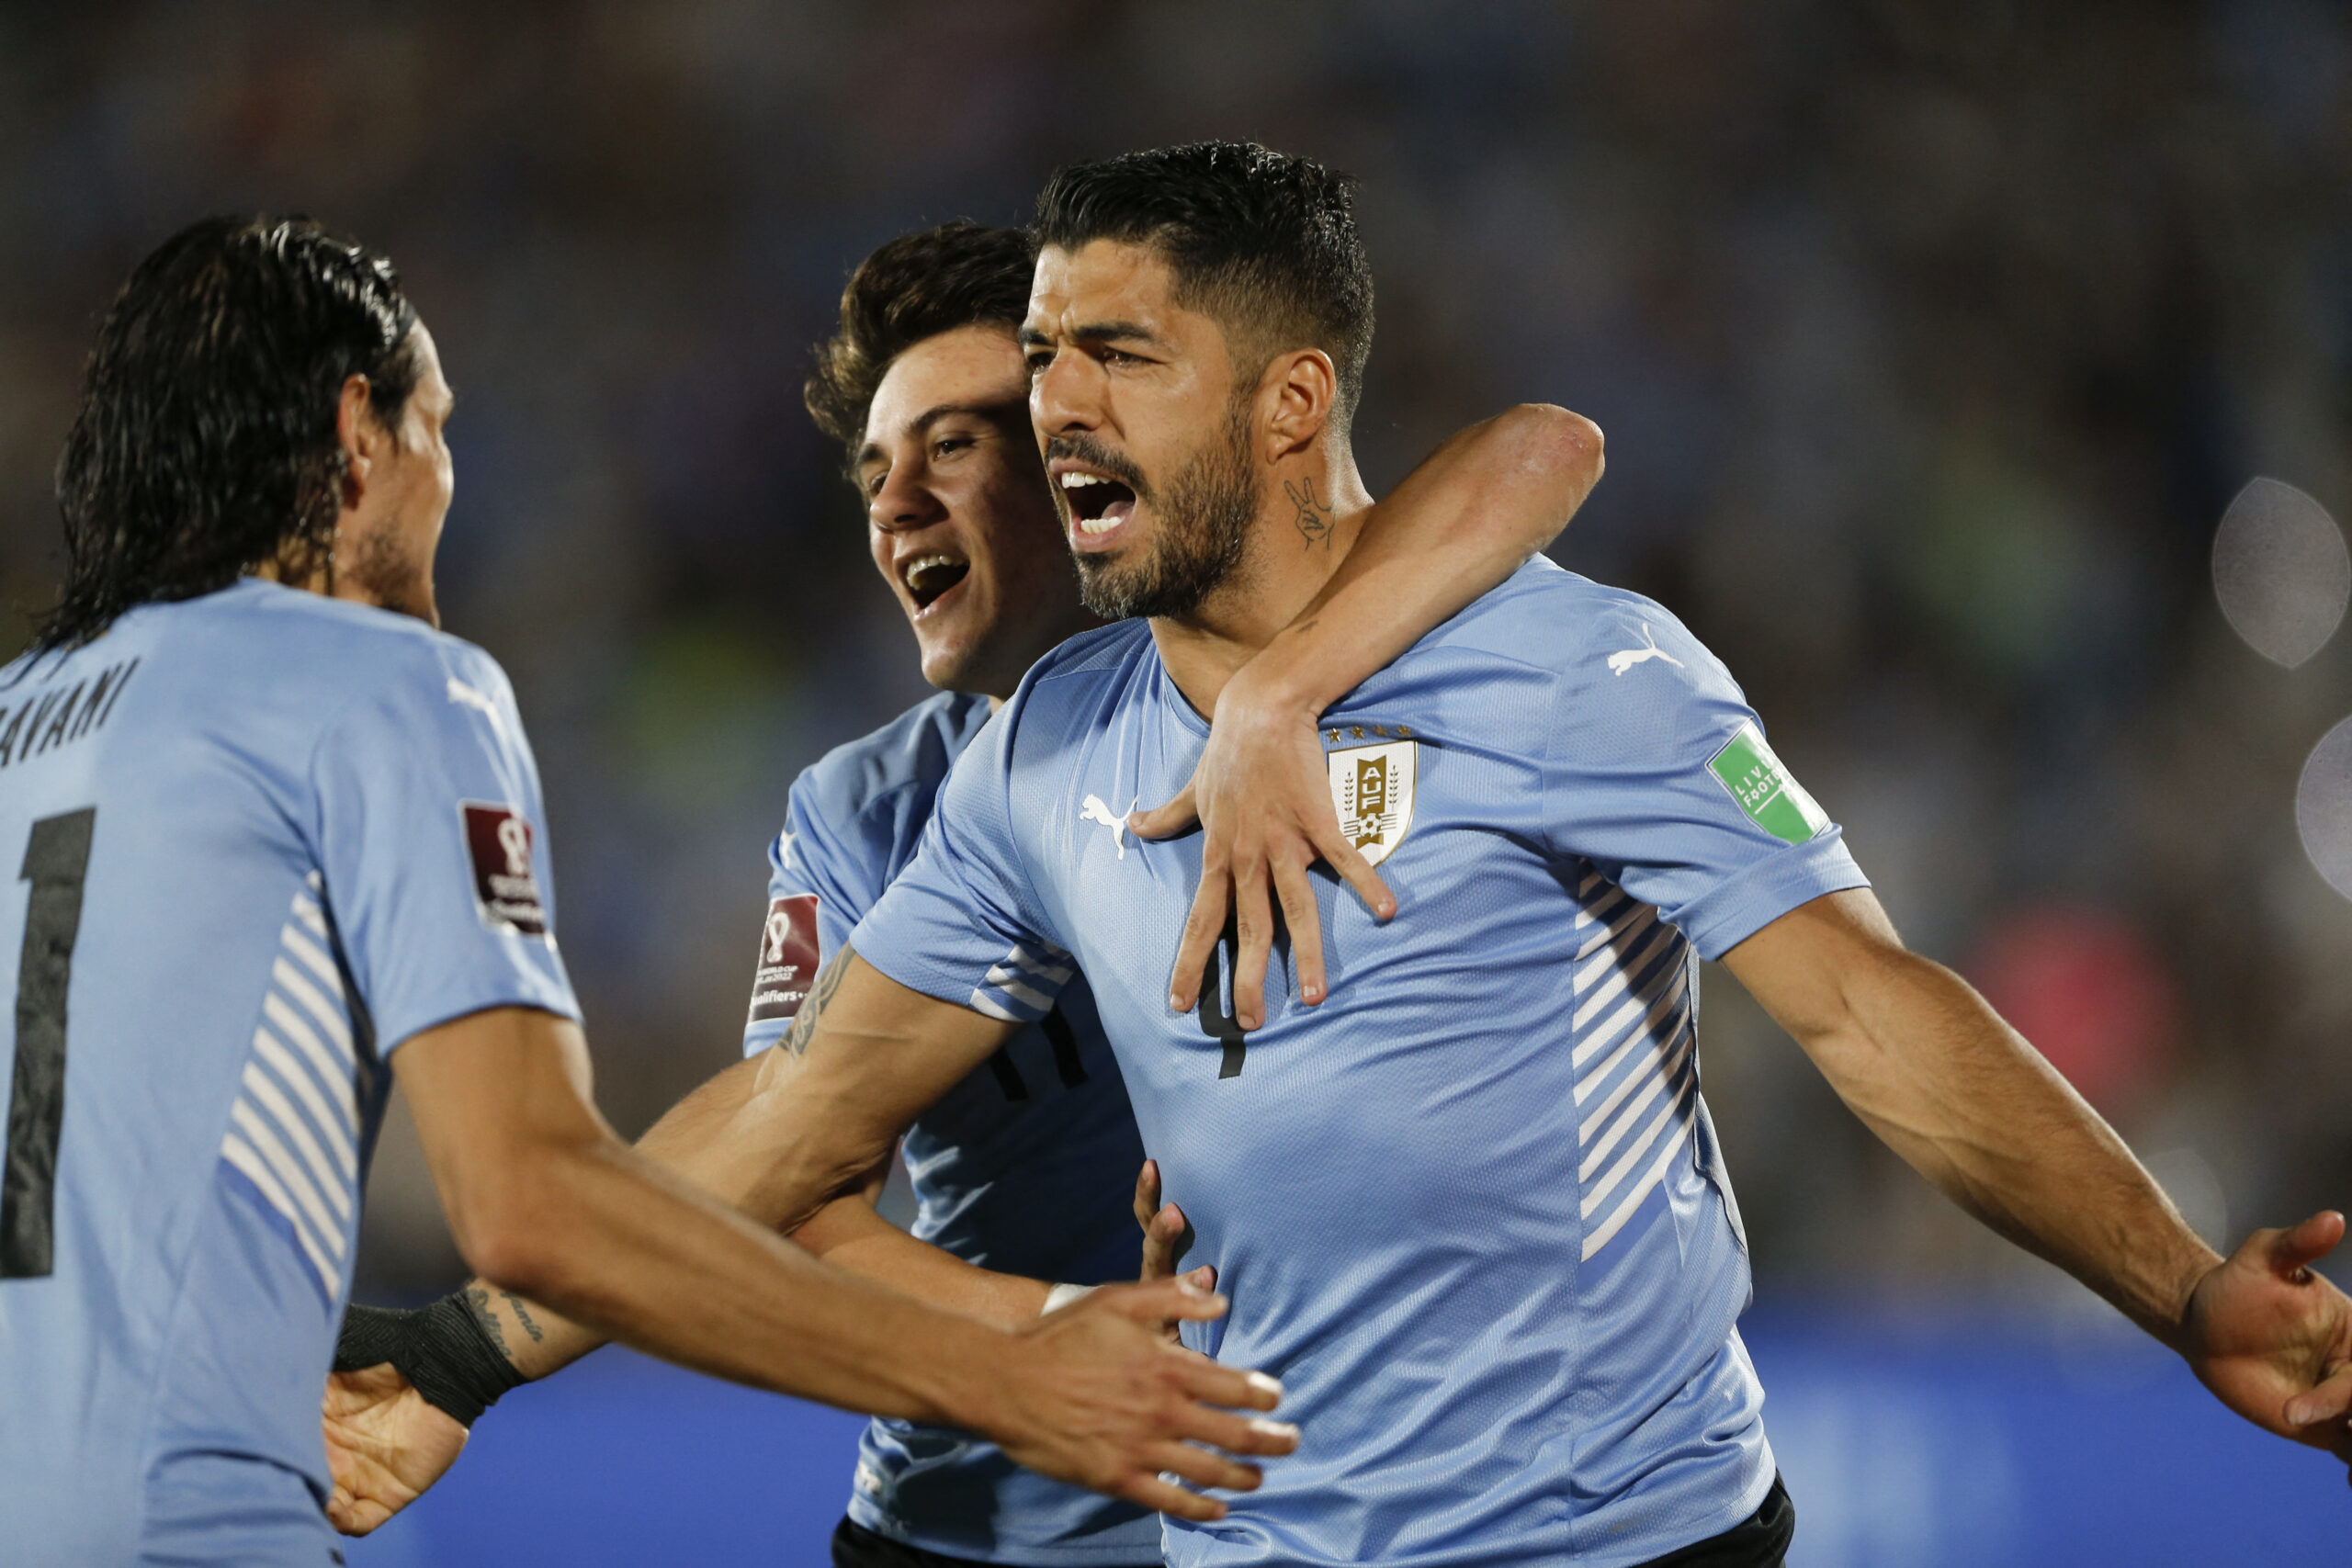 Uruguai goleia e entra no G4 das eliminatórias - CONMEBOL